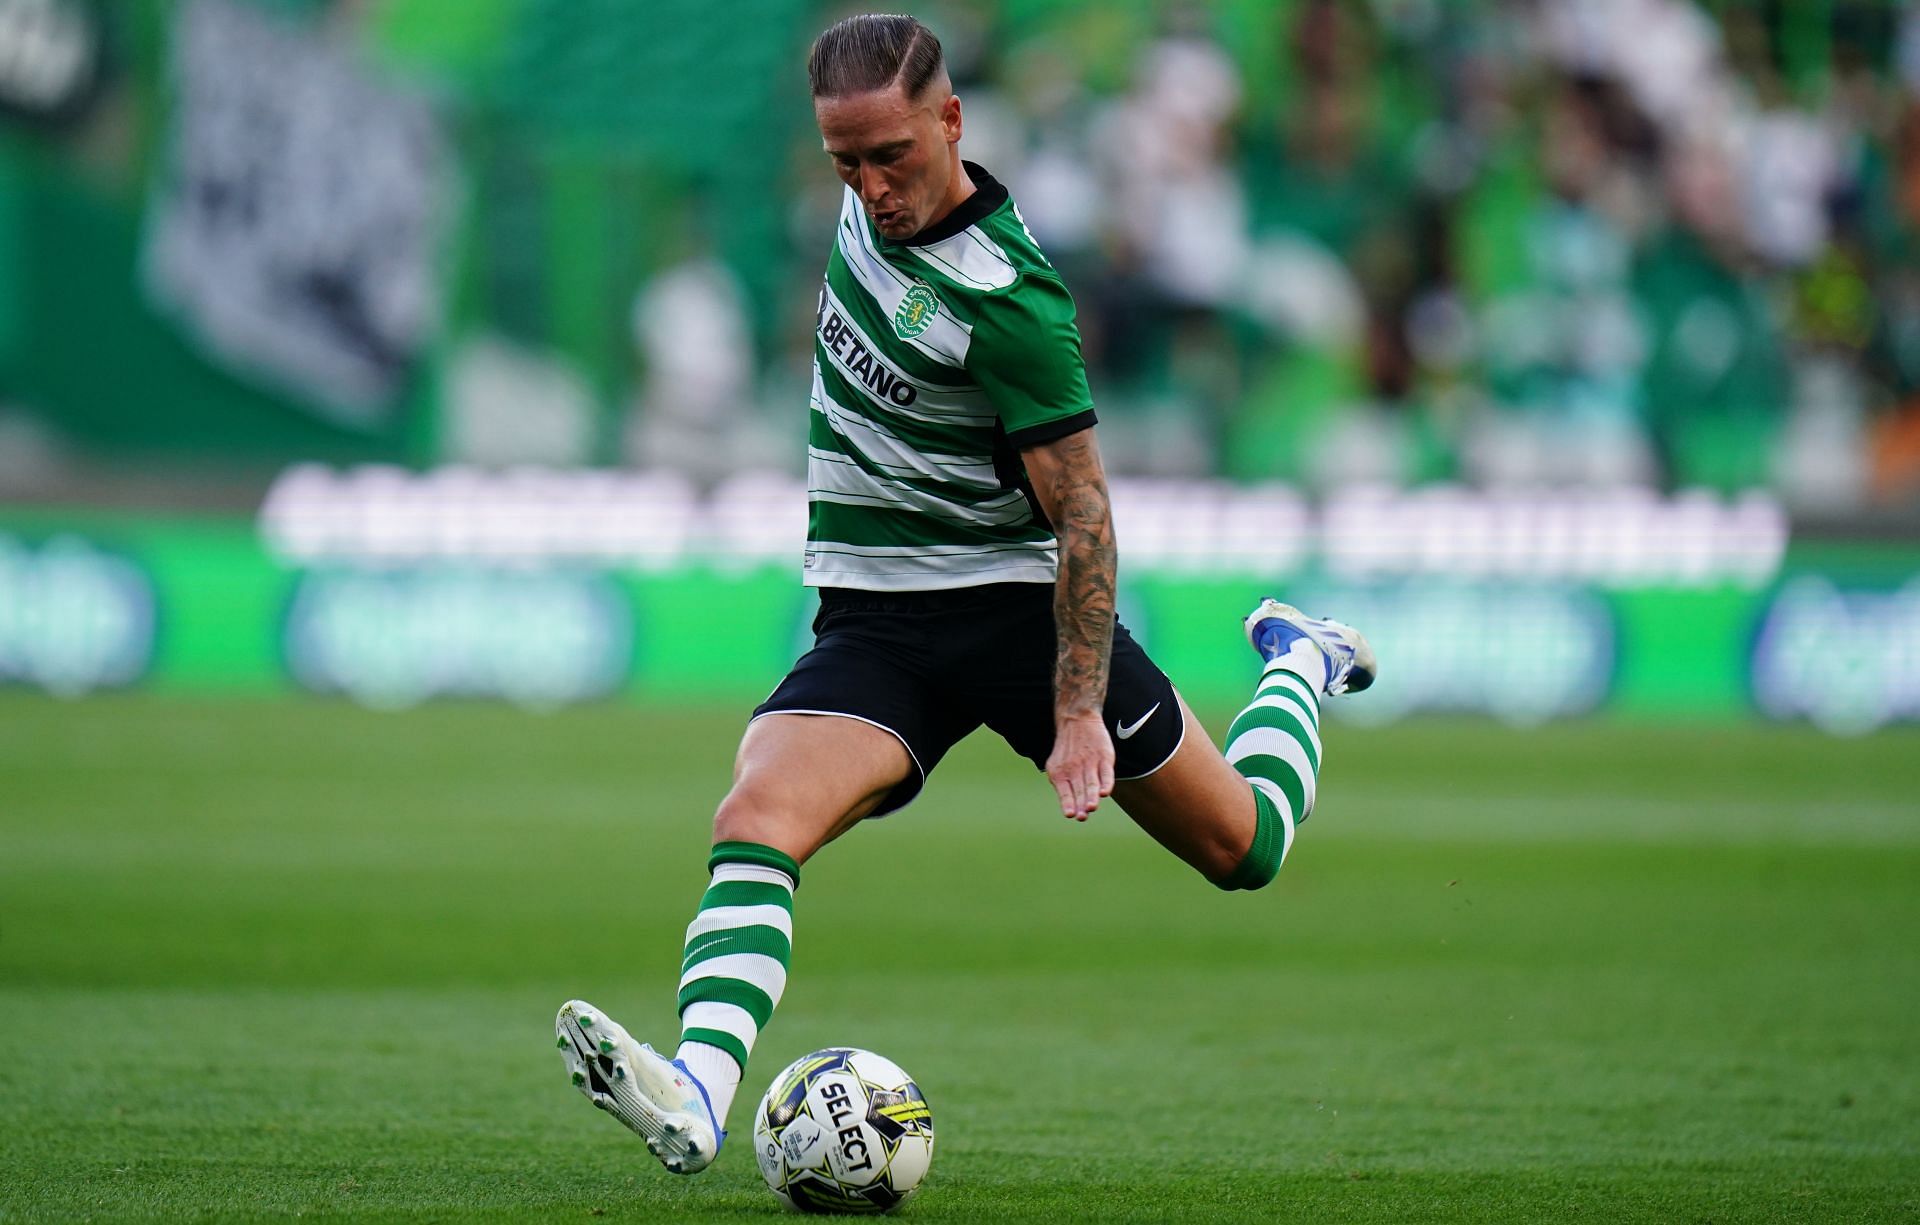 Sporting host Rio Ave in the Primeira Liga on Saturday.